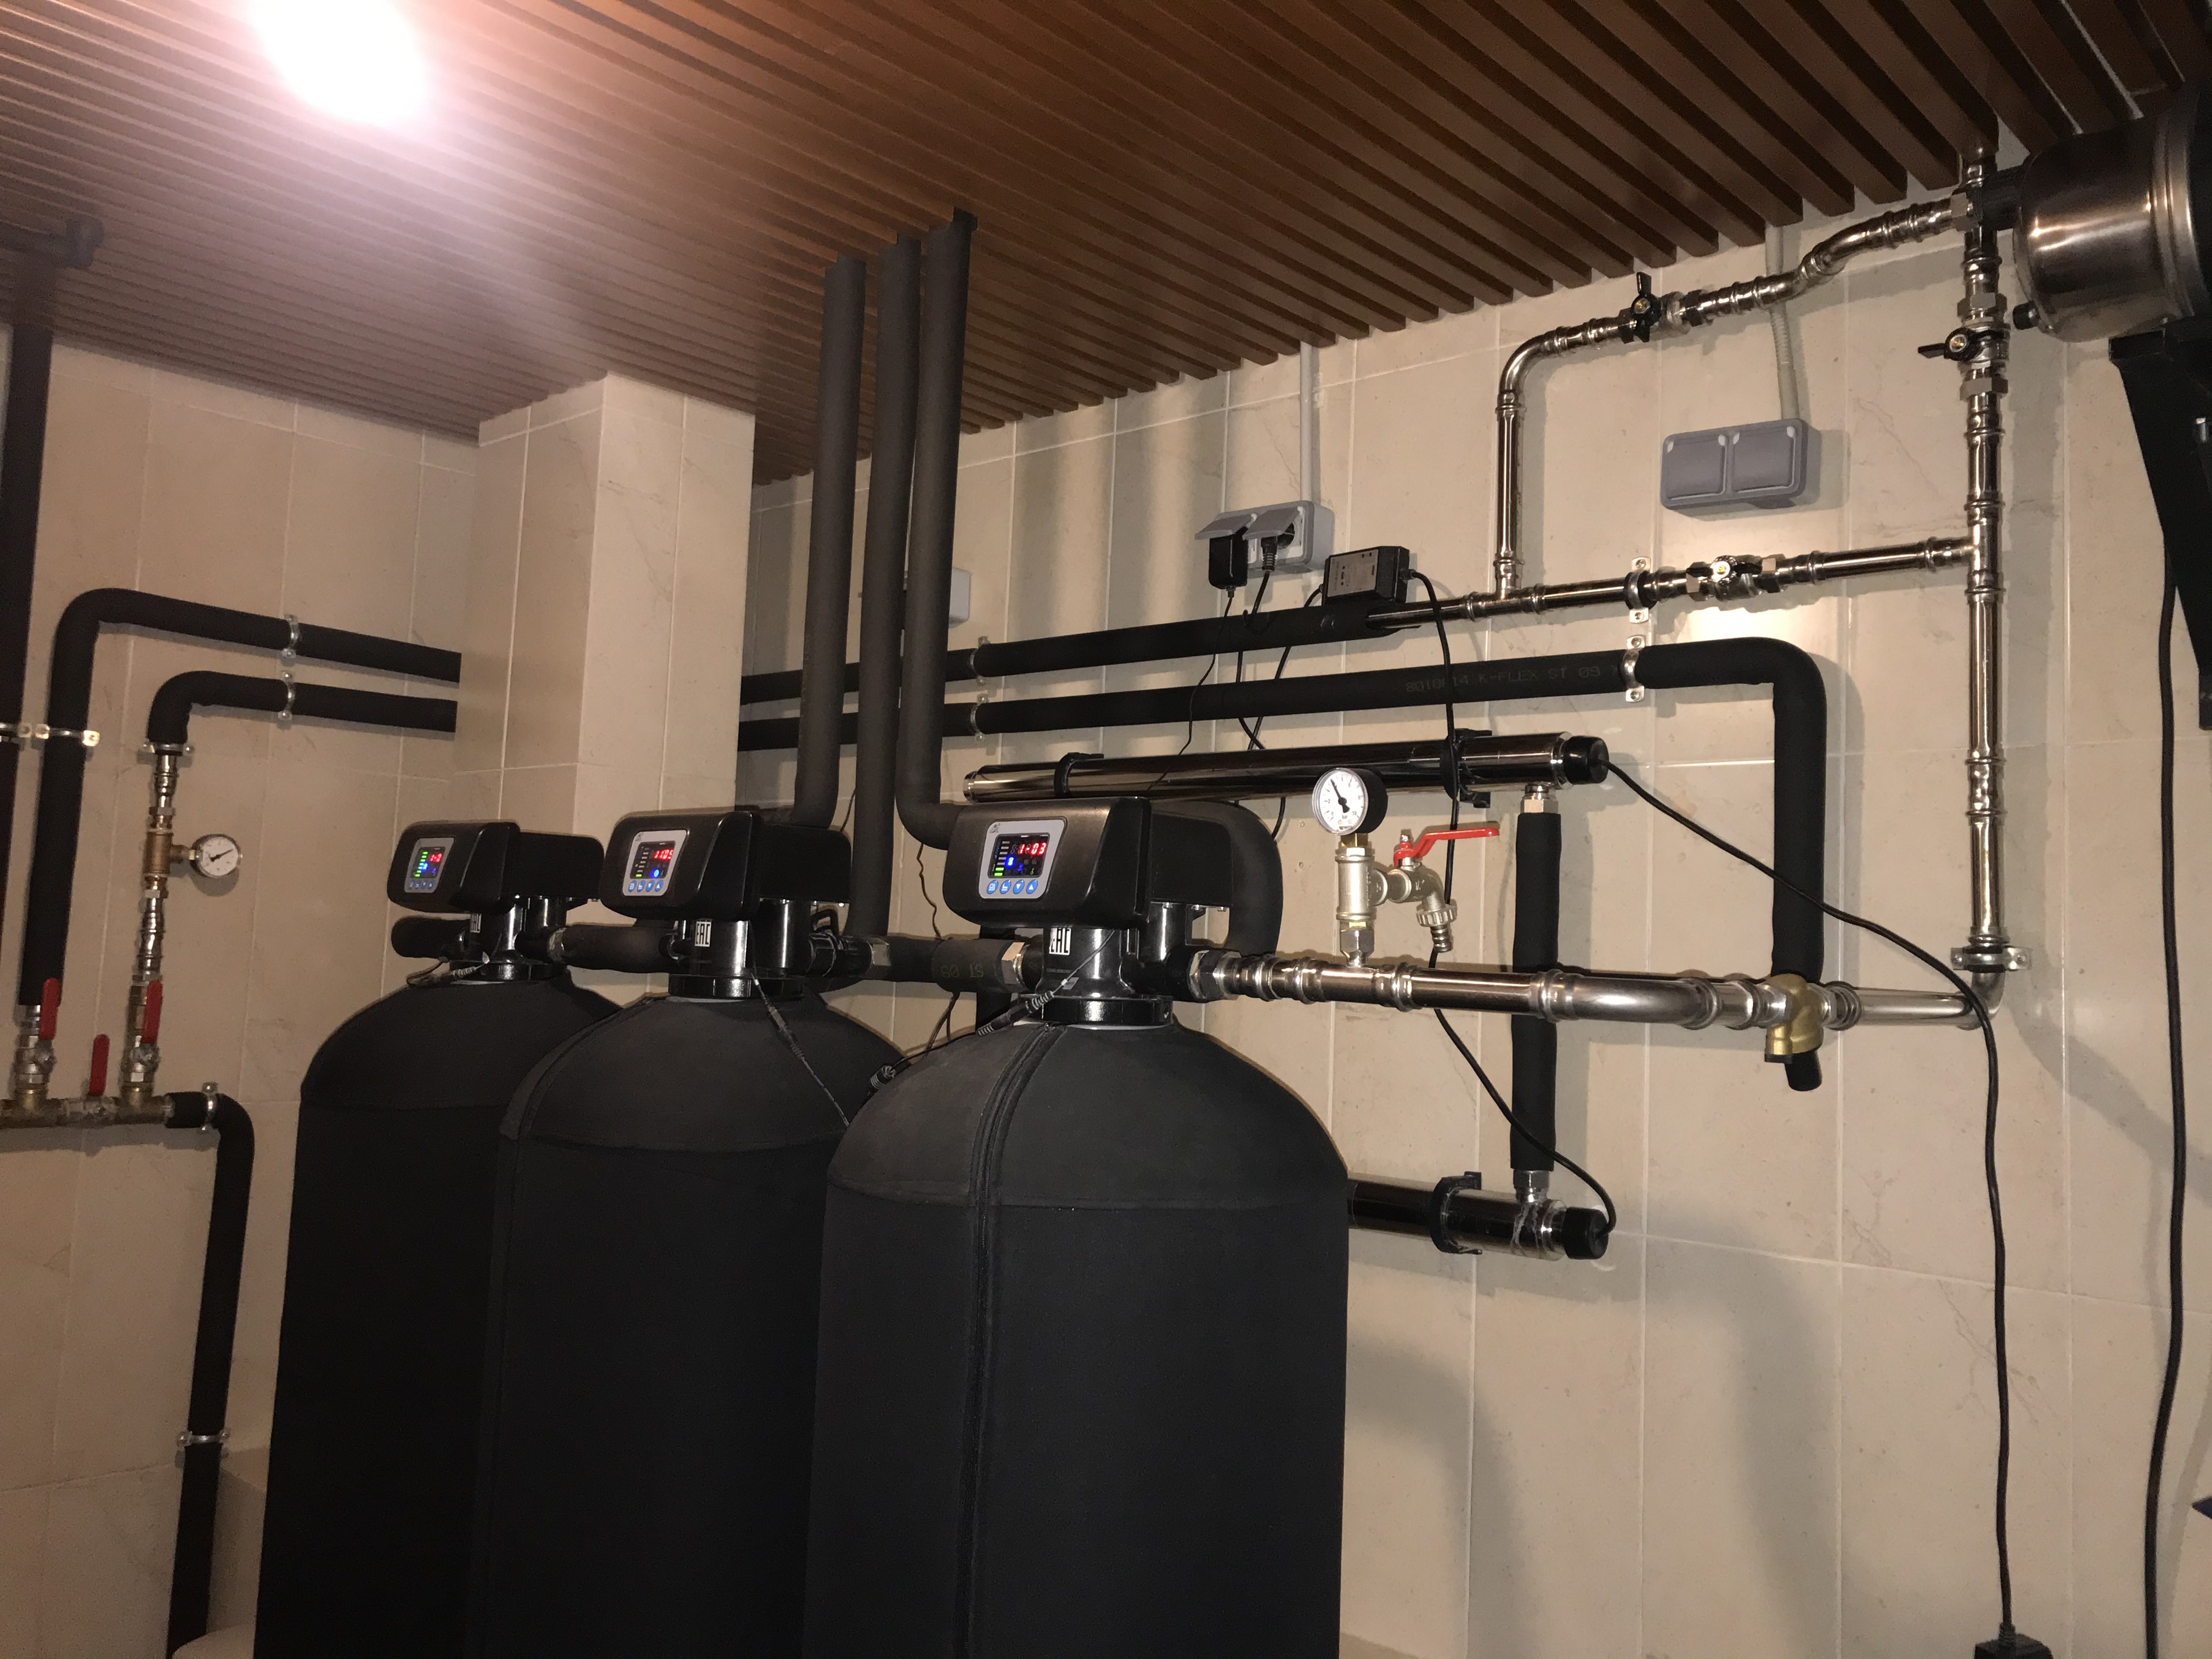 Монтаж стильной системы водоочистки. Фильтры и подводка выполнены в чёрном цвете с металлическими соединениями.